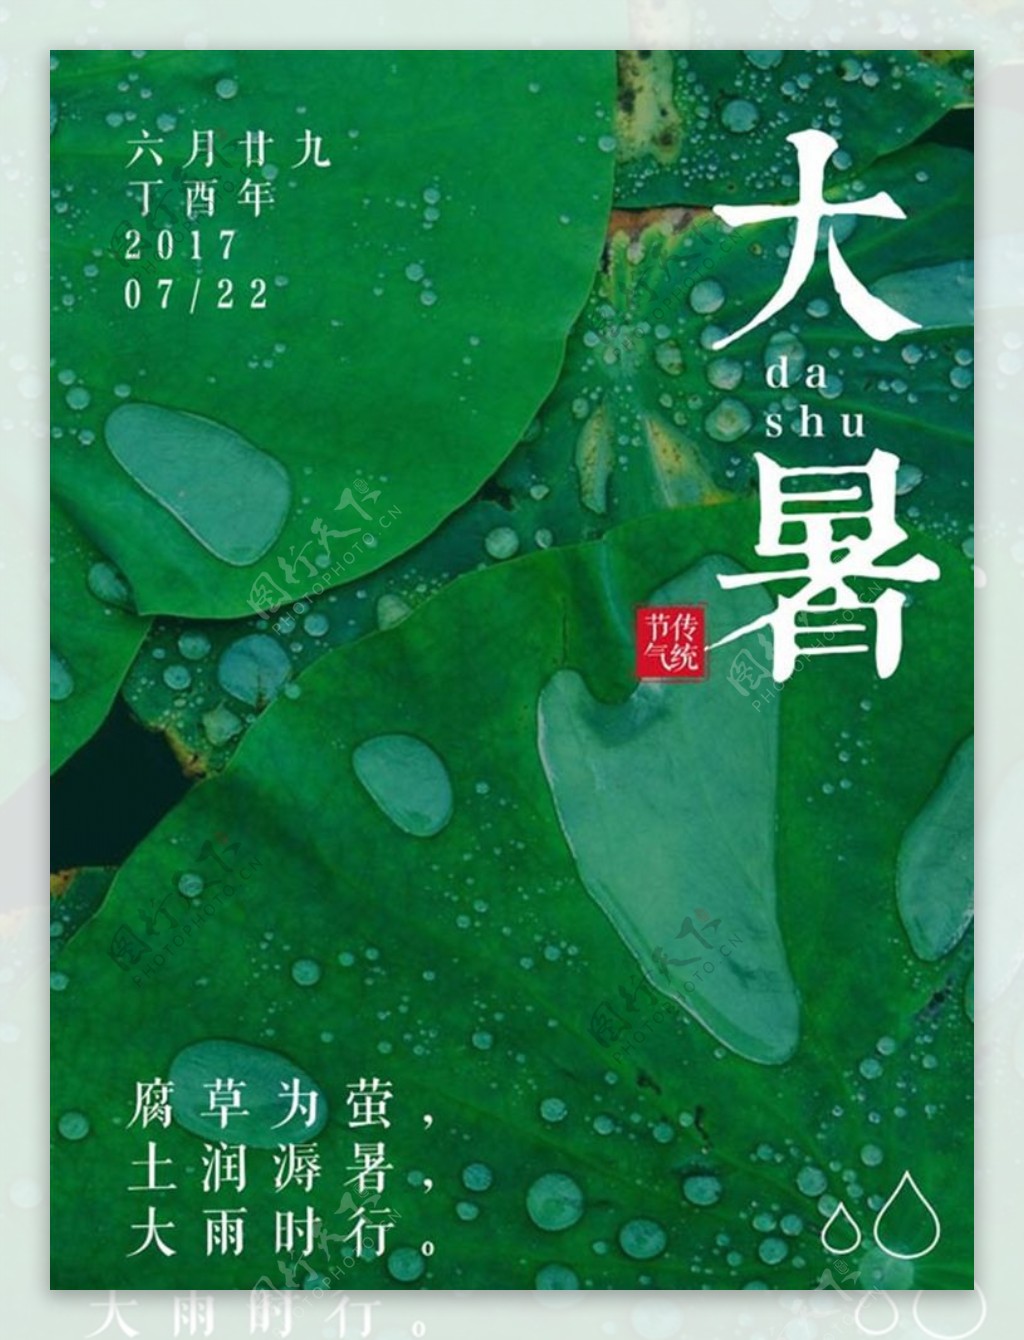 绿色简约中国传统大暑节气海报